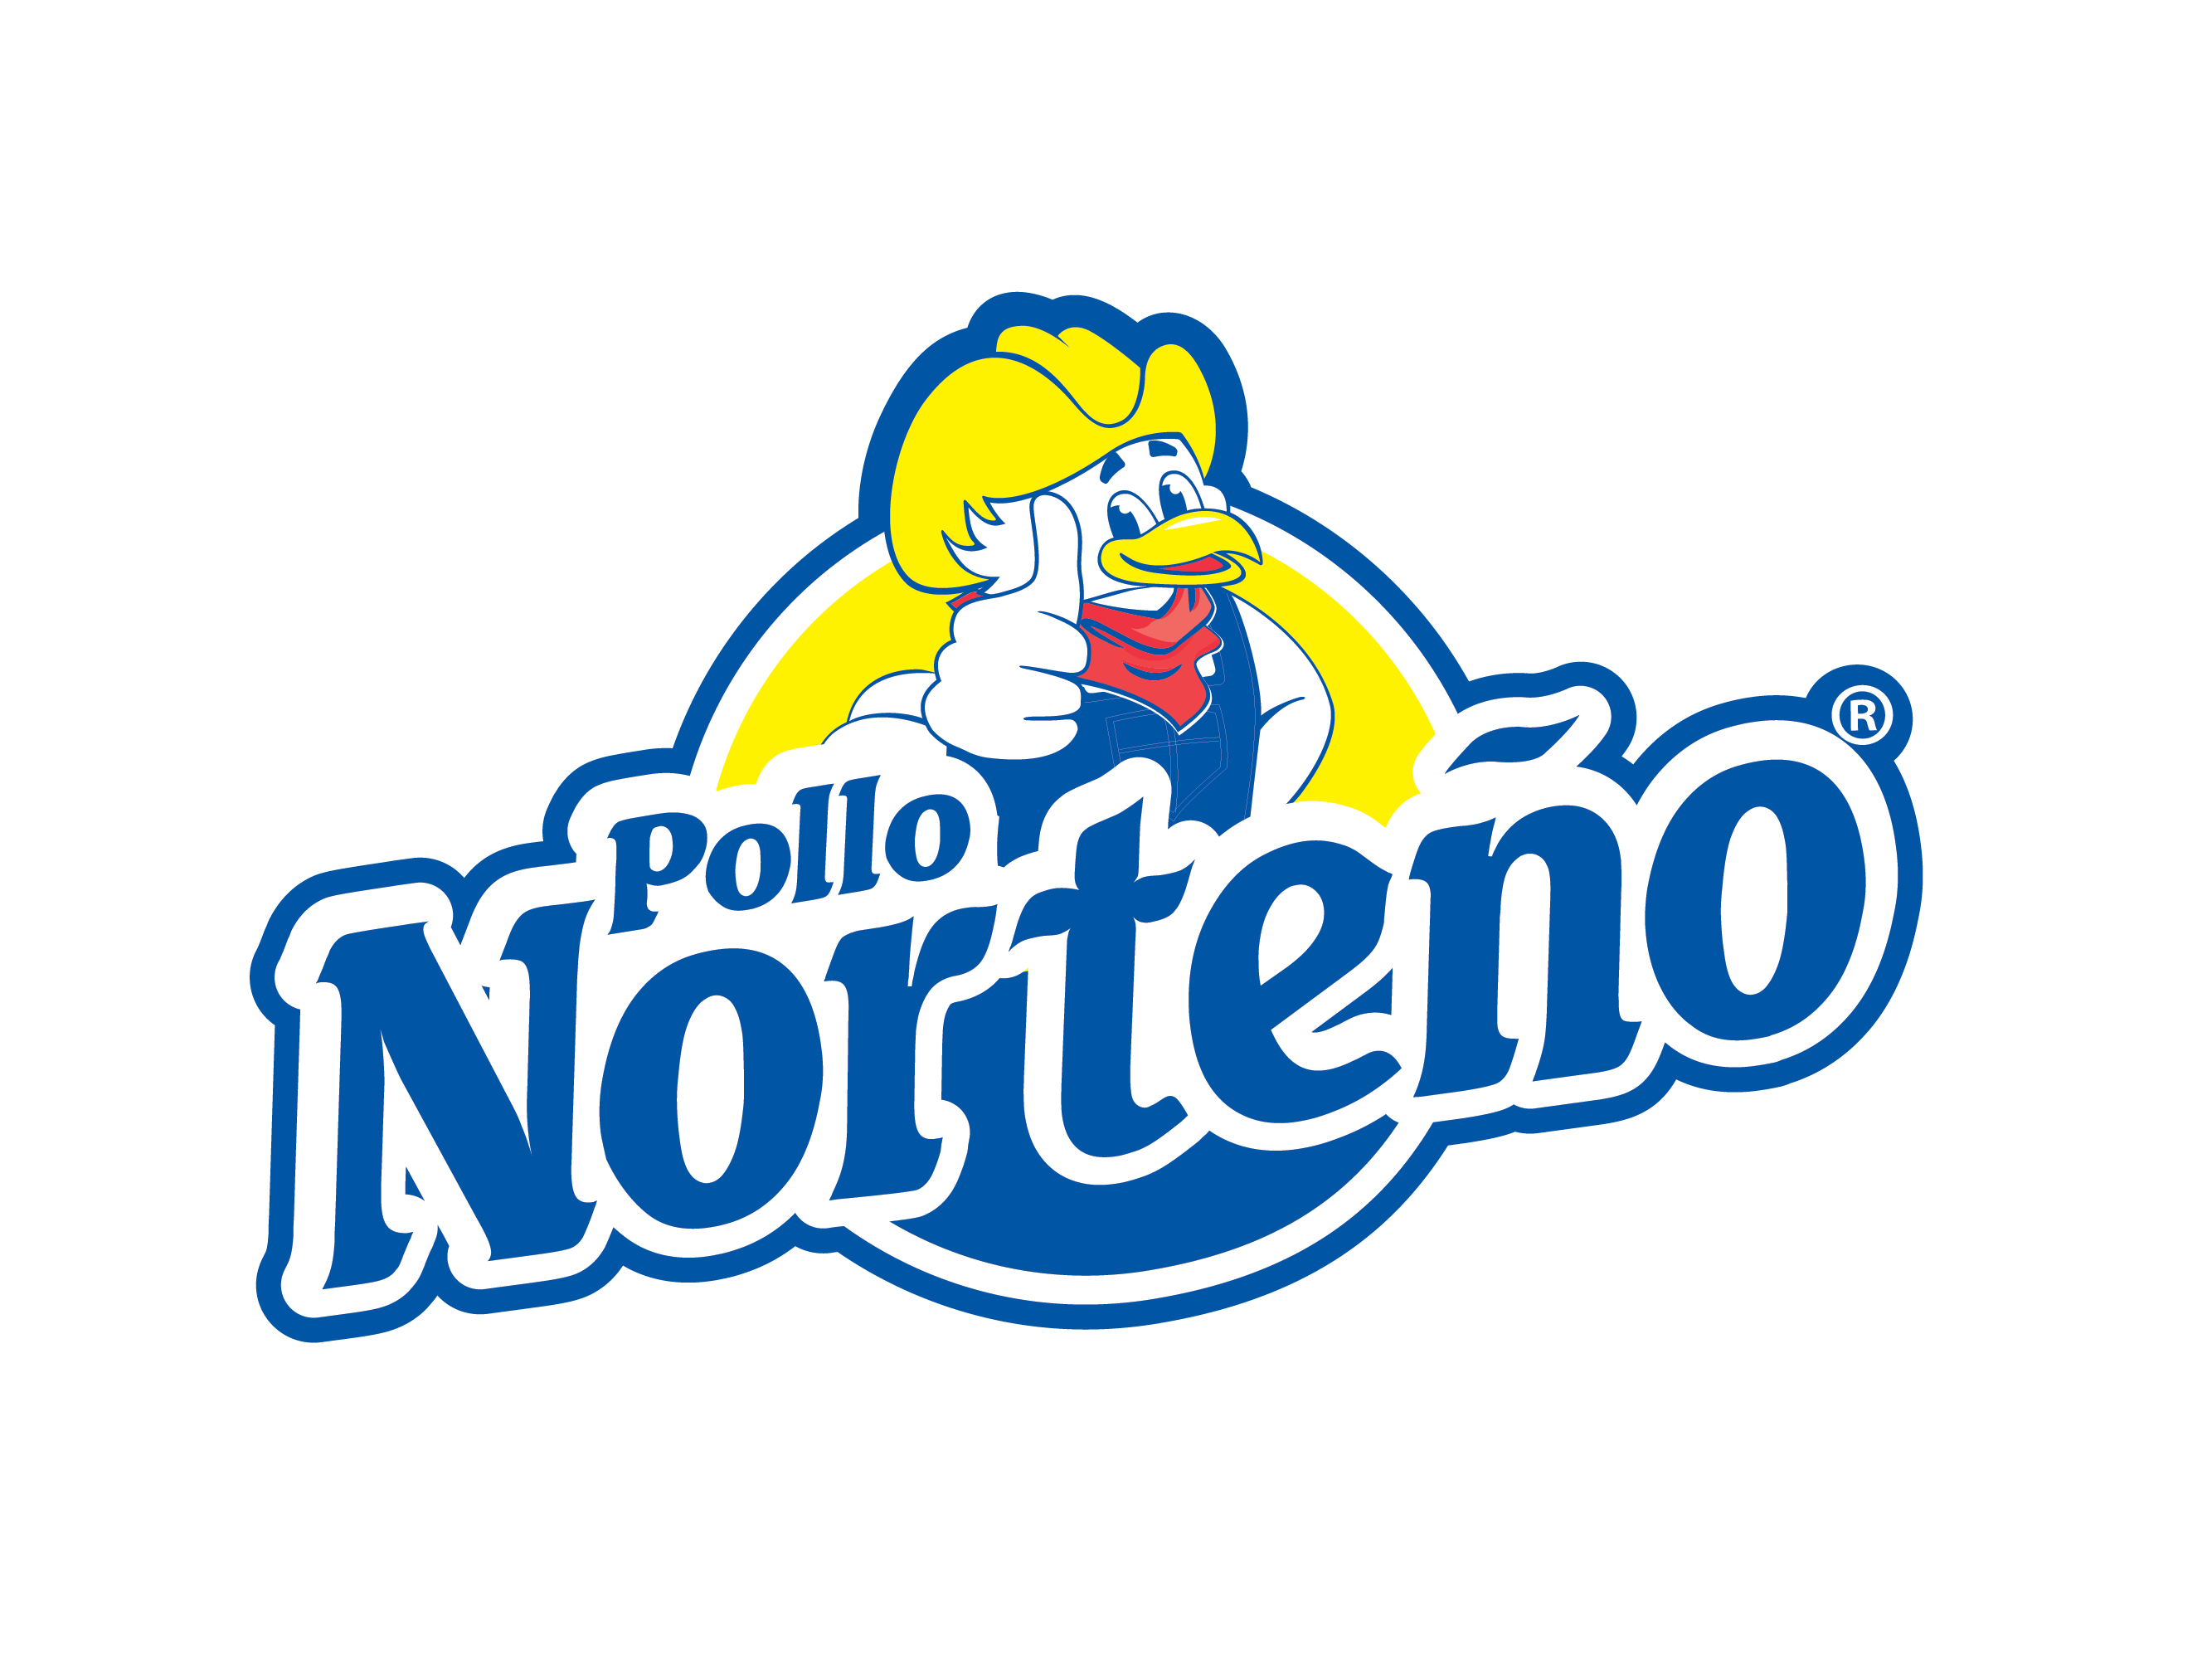 Pollo Norteno logo